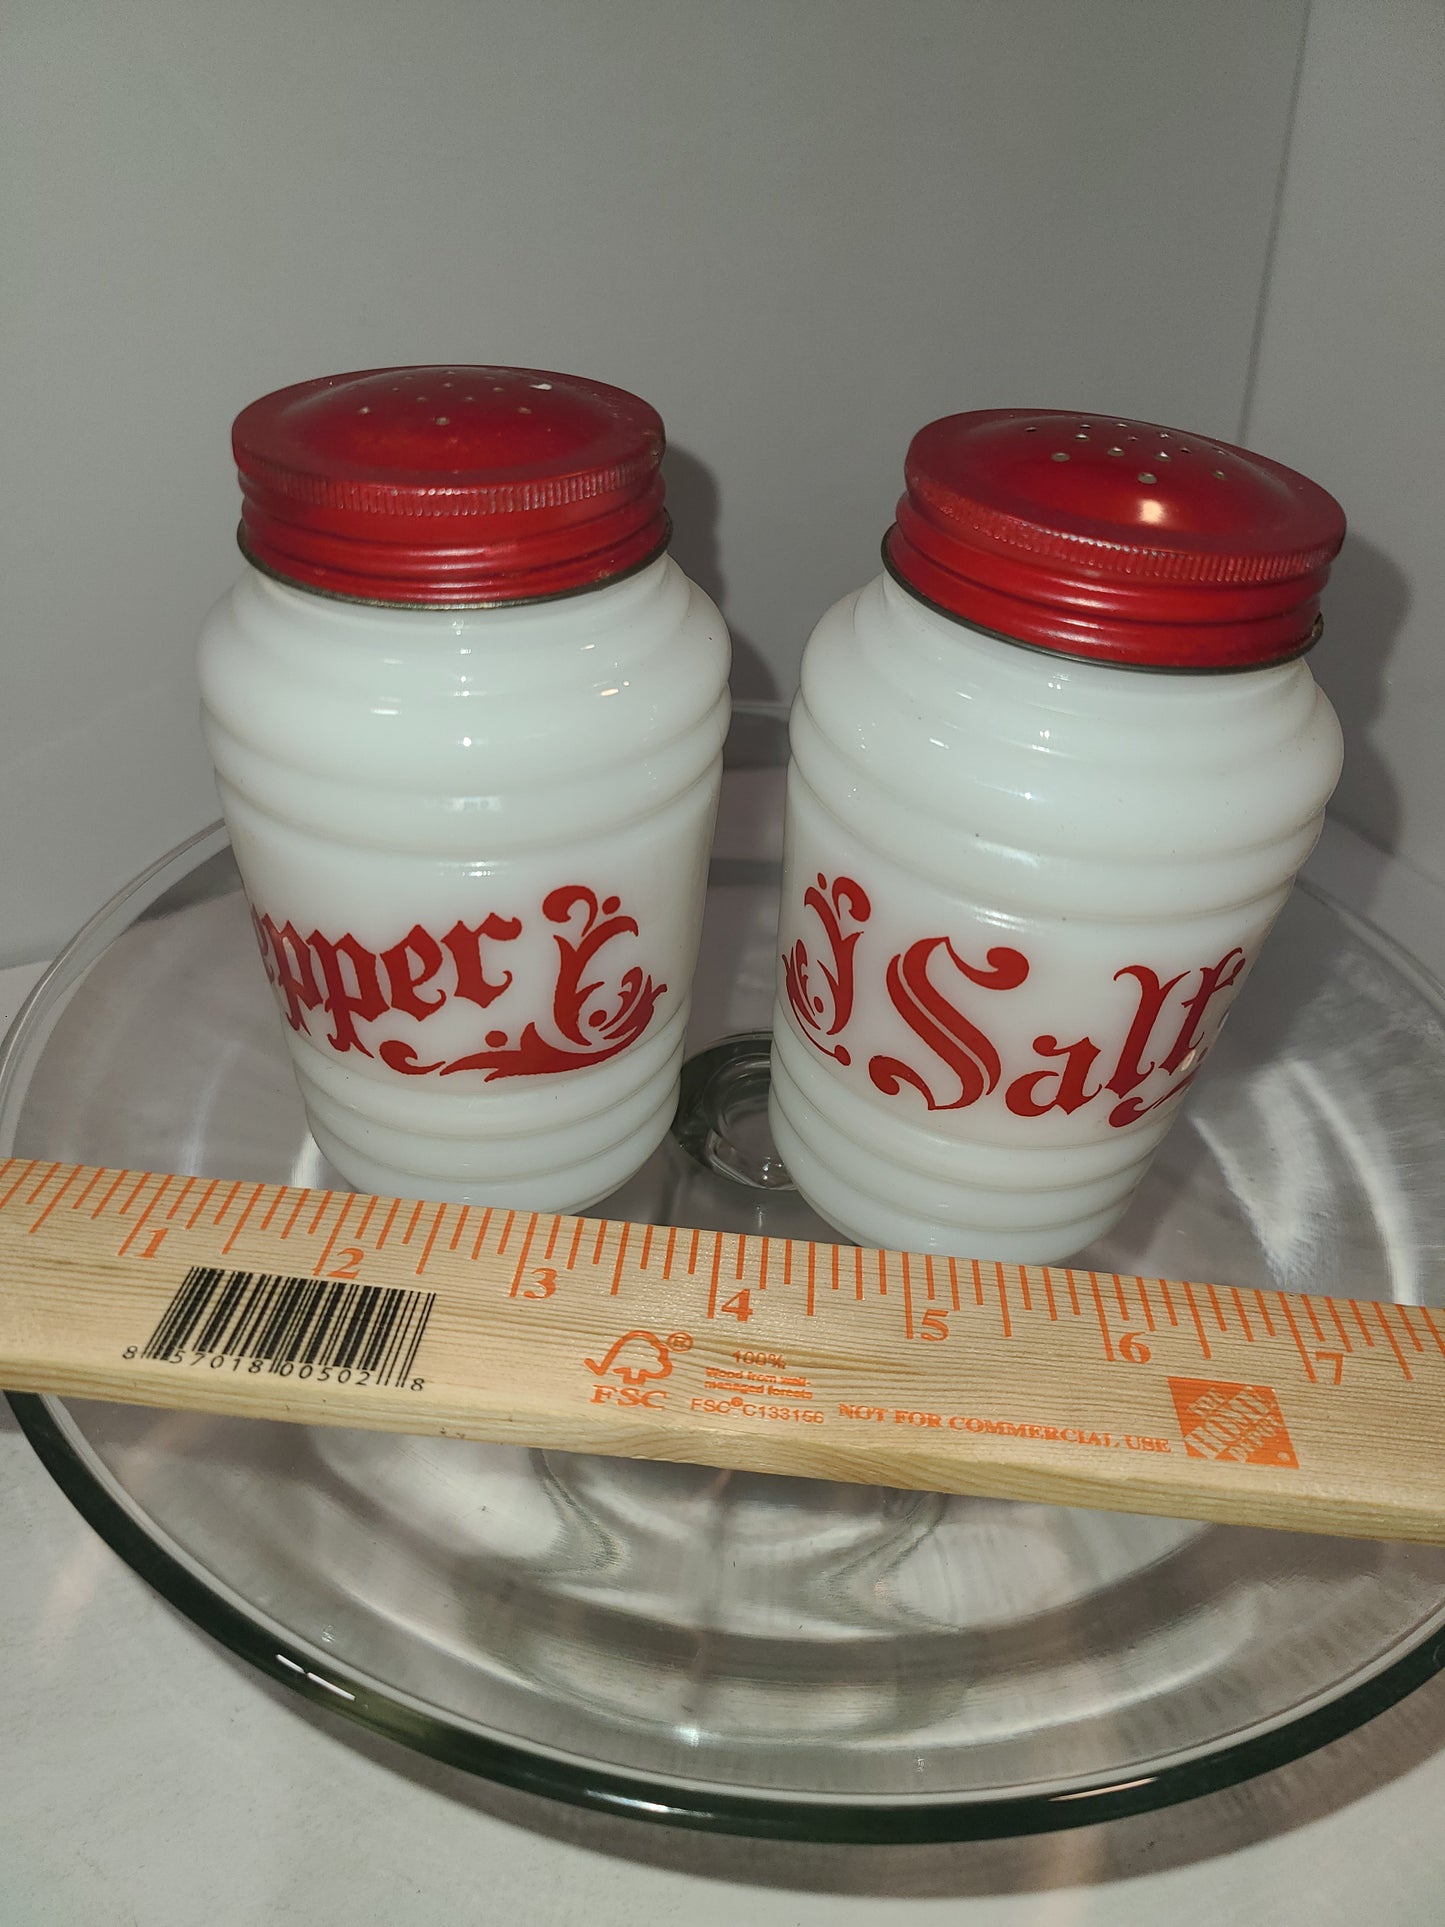 Vintage Milk Glass Salt and Pepper